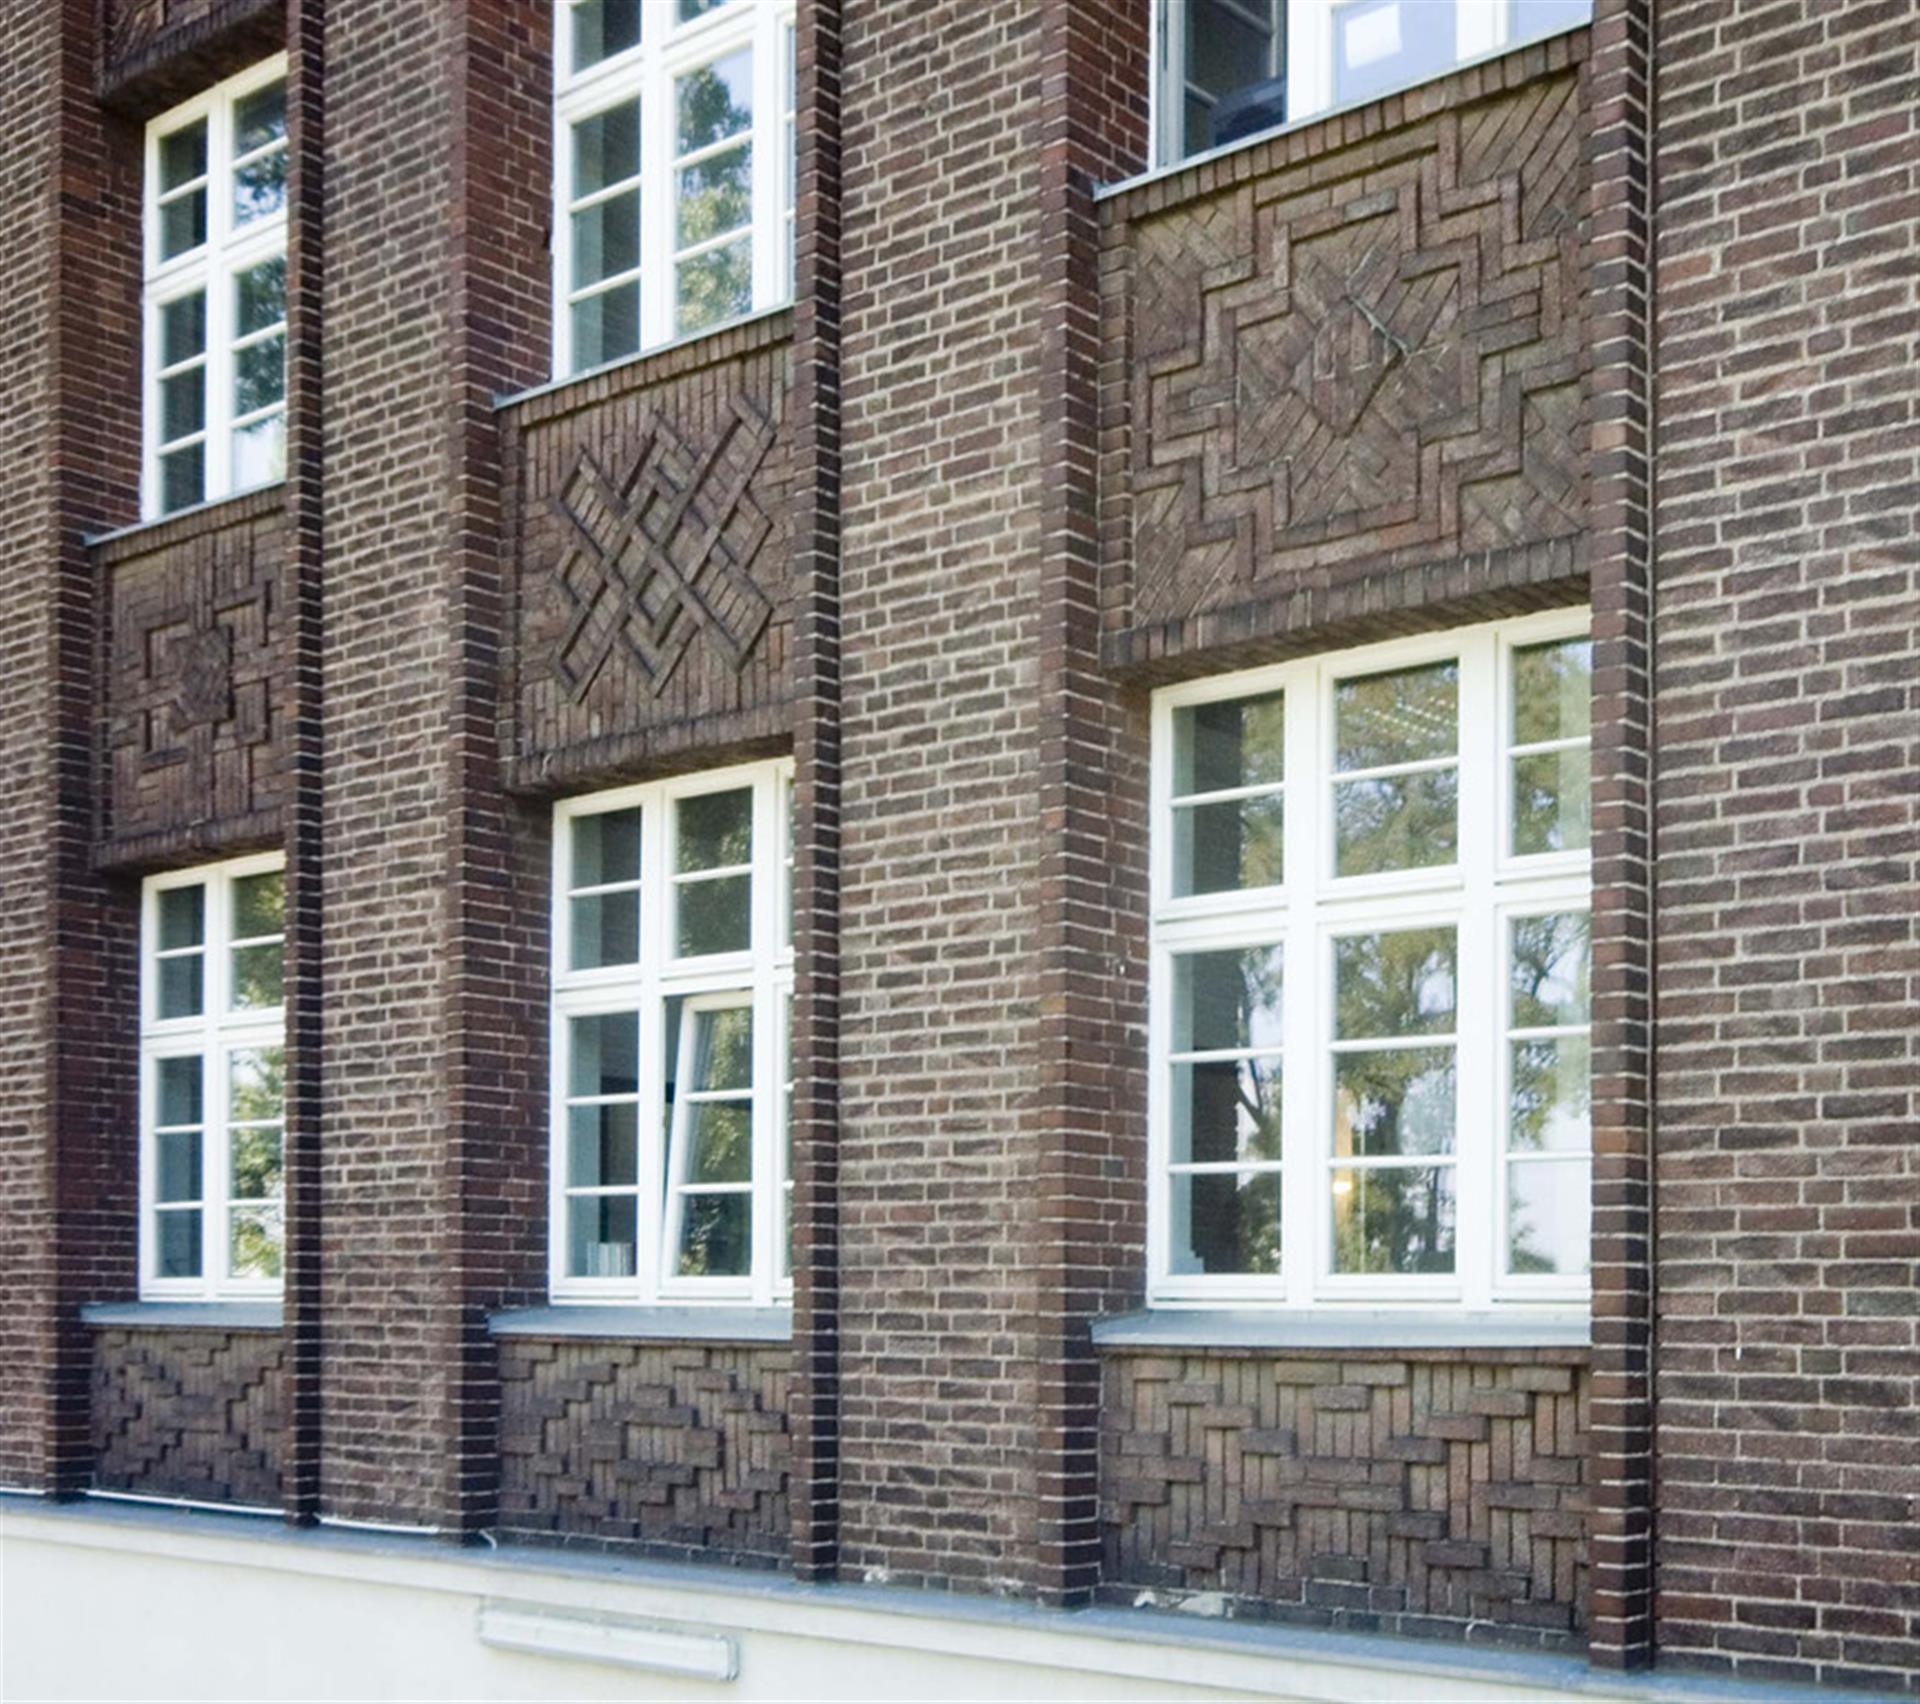 Backsteinfassade des Verwaltungsgebäudes mit Torhaus von 1926/27. (2018) &copy; Walter Buschmann / Landschaftsverband Rheinland